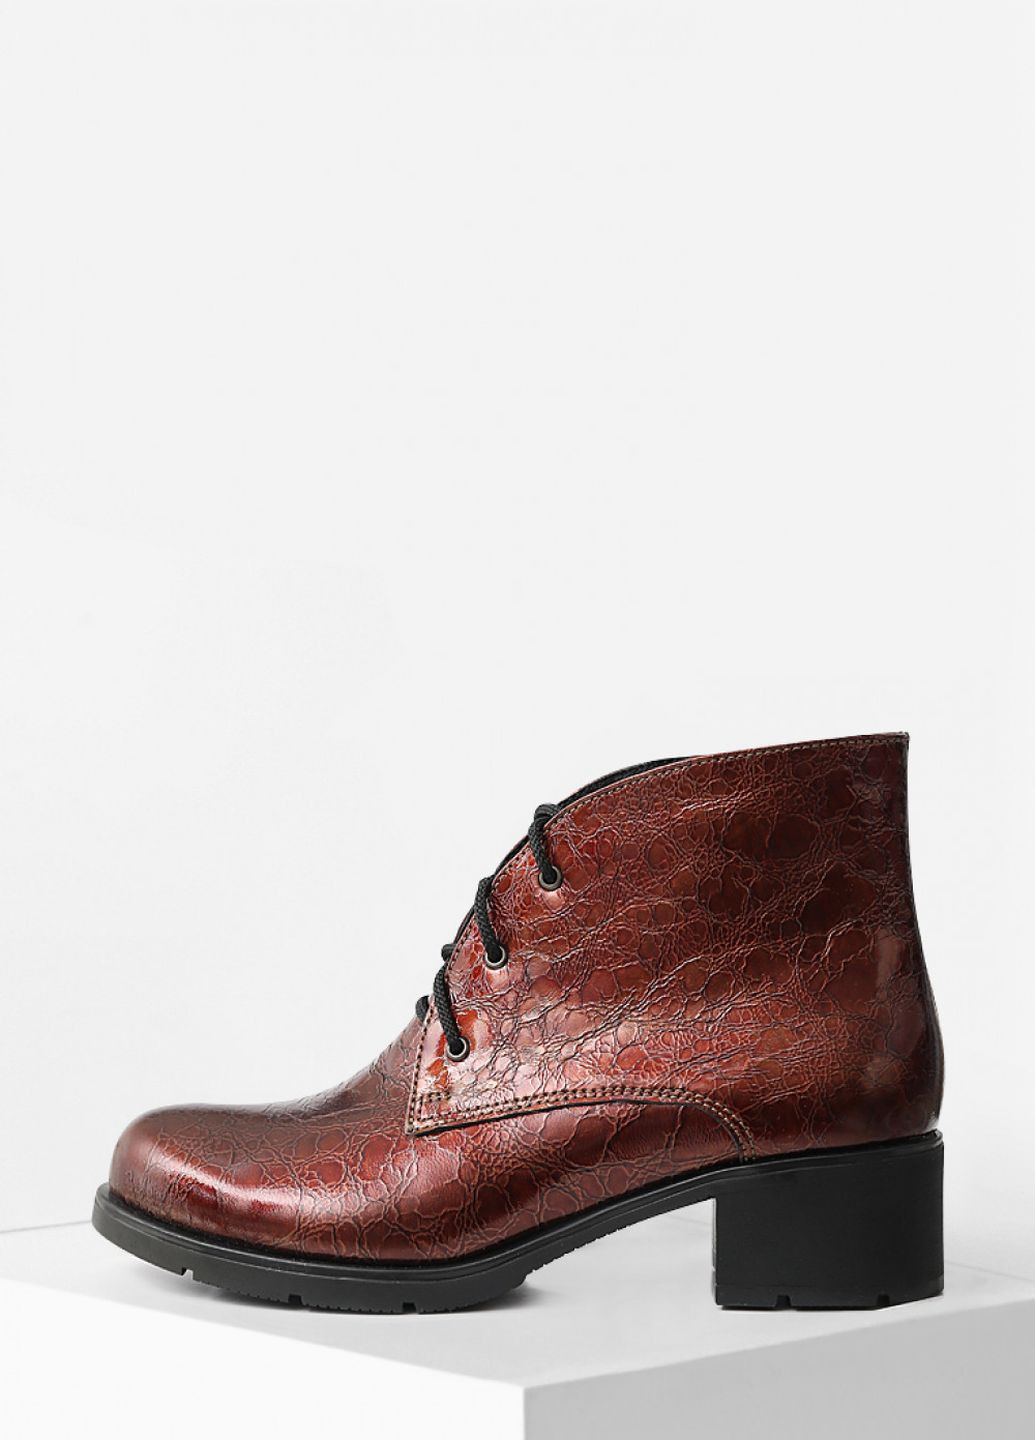 Осенние демисезонные яркие лаковые ботинки на широком каблуке Villomi со шнуровкой